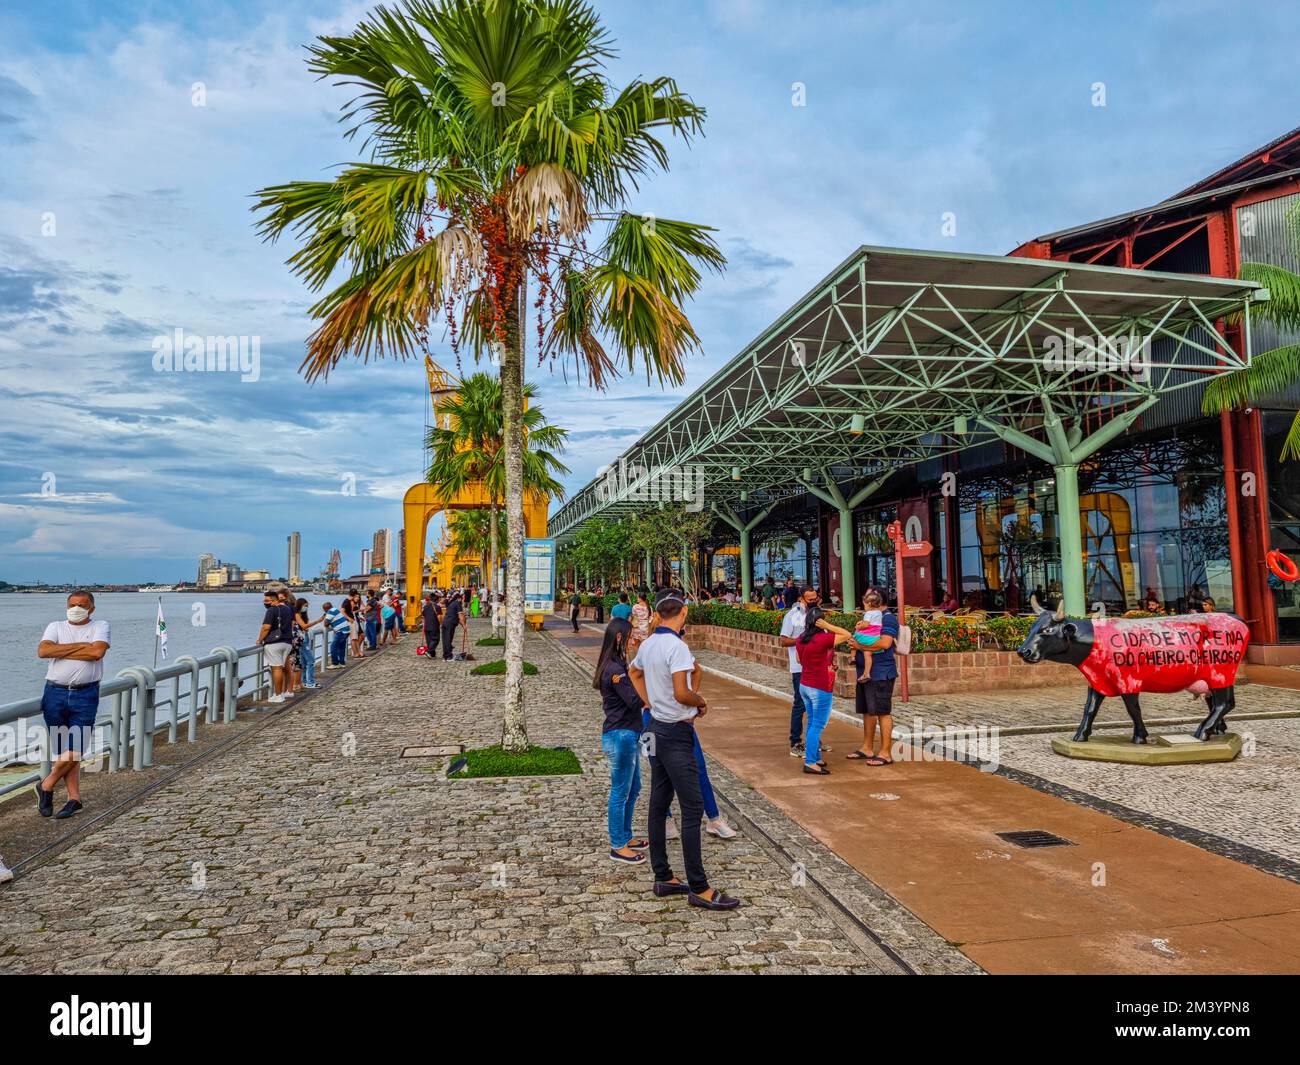 Estacao das Docas, renovated Pier, Belem, Brazil Stock Photo